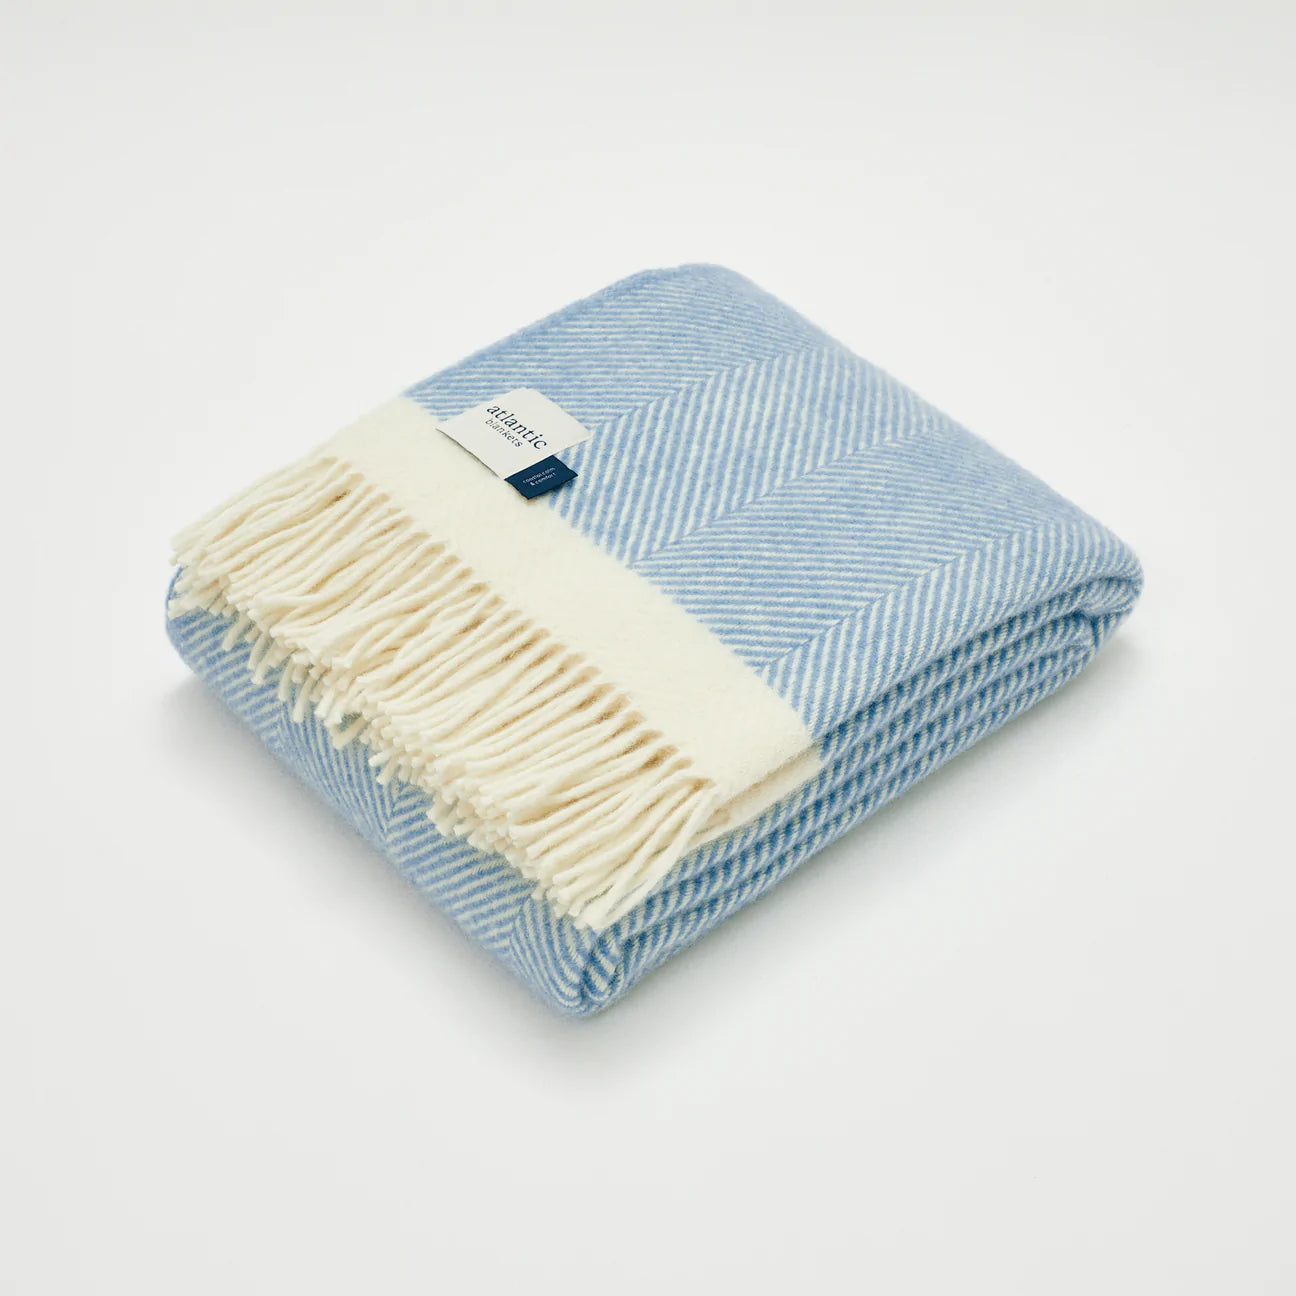 Dusk blue Herringbone Wool Throw Blanket - The Bristol Artisan Handmade Sustainable Gifts and Homewares.